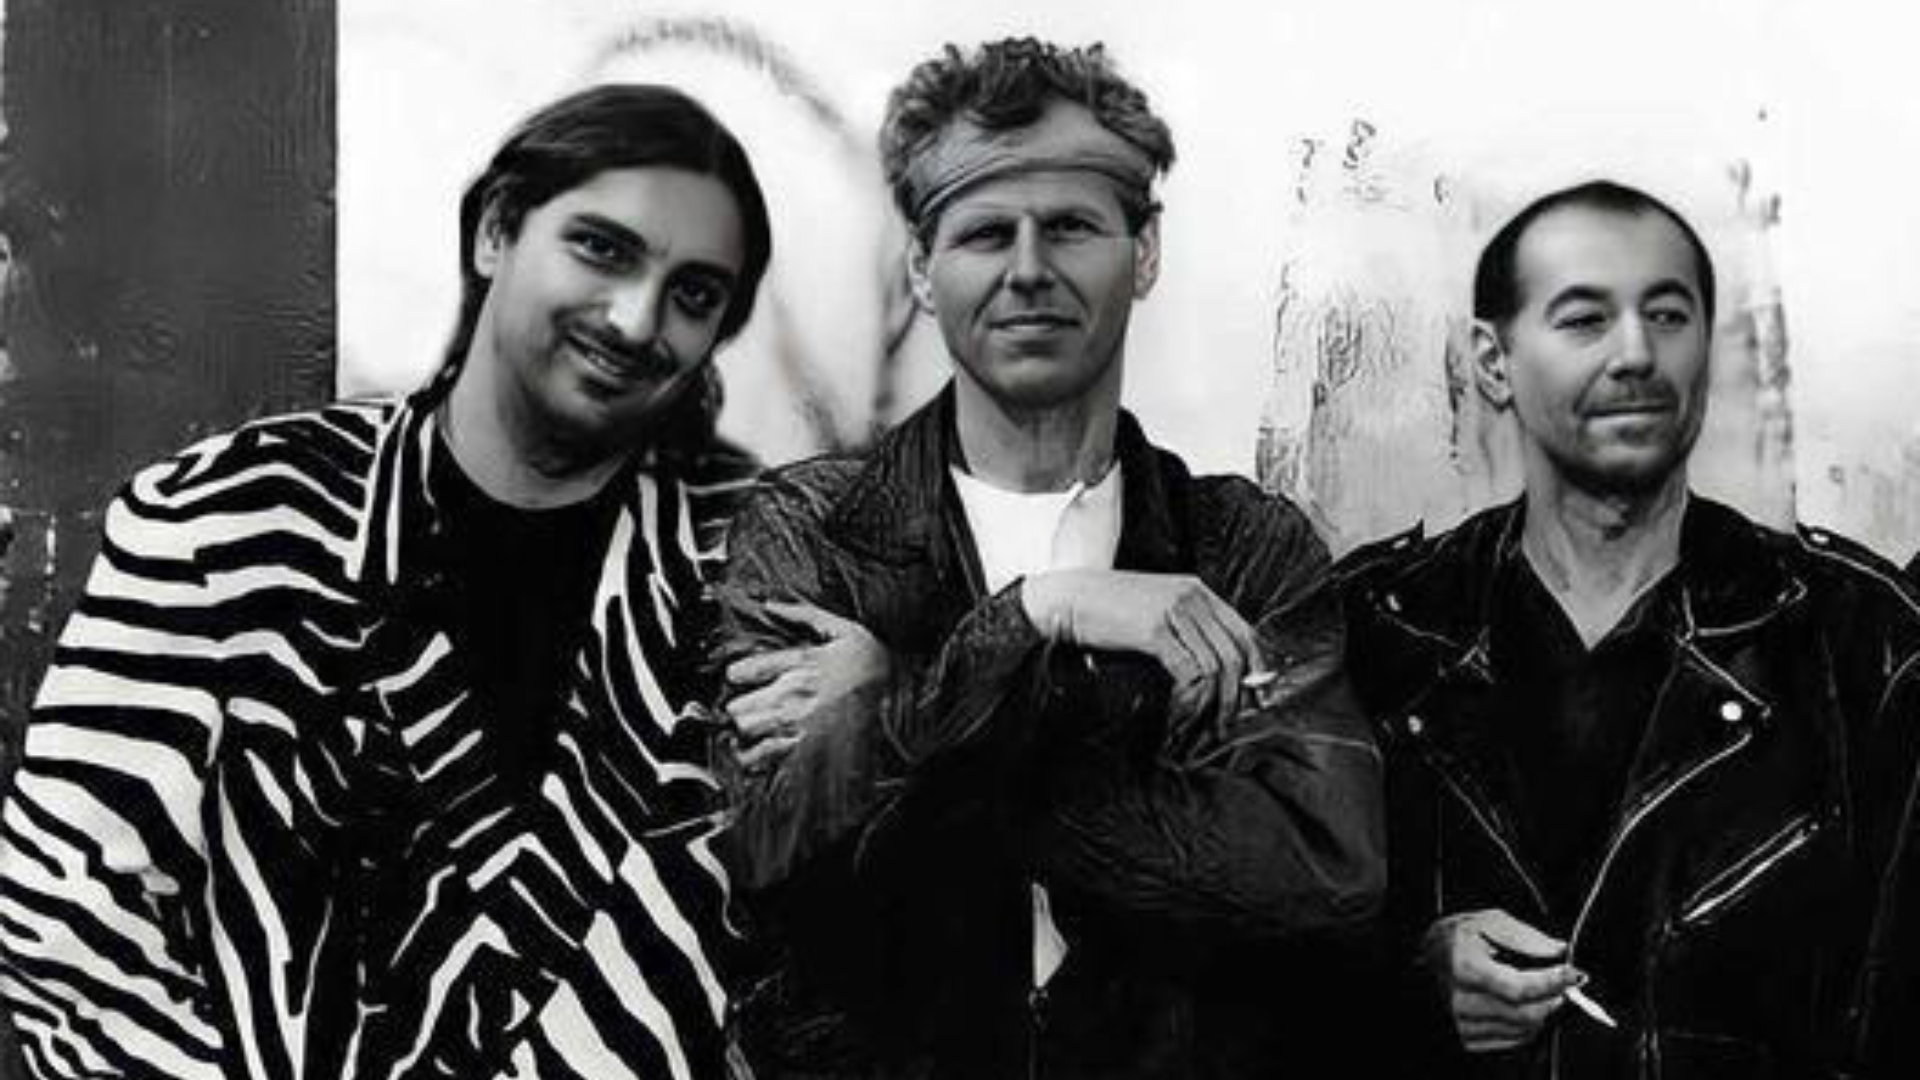 Regisseur Rudi Dolezal mit Georg Danzer und Willi Resetarits bei einem Musikvideo-Dreh (Bild: Archive Prods LLC)